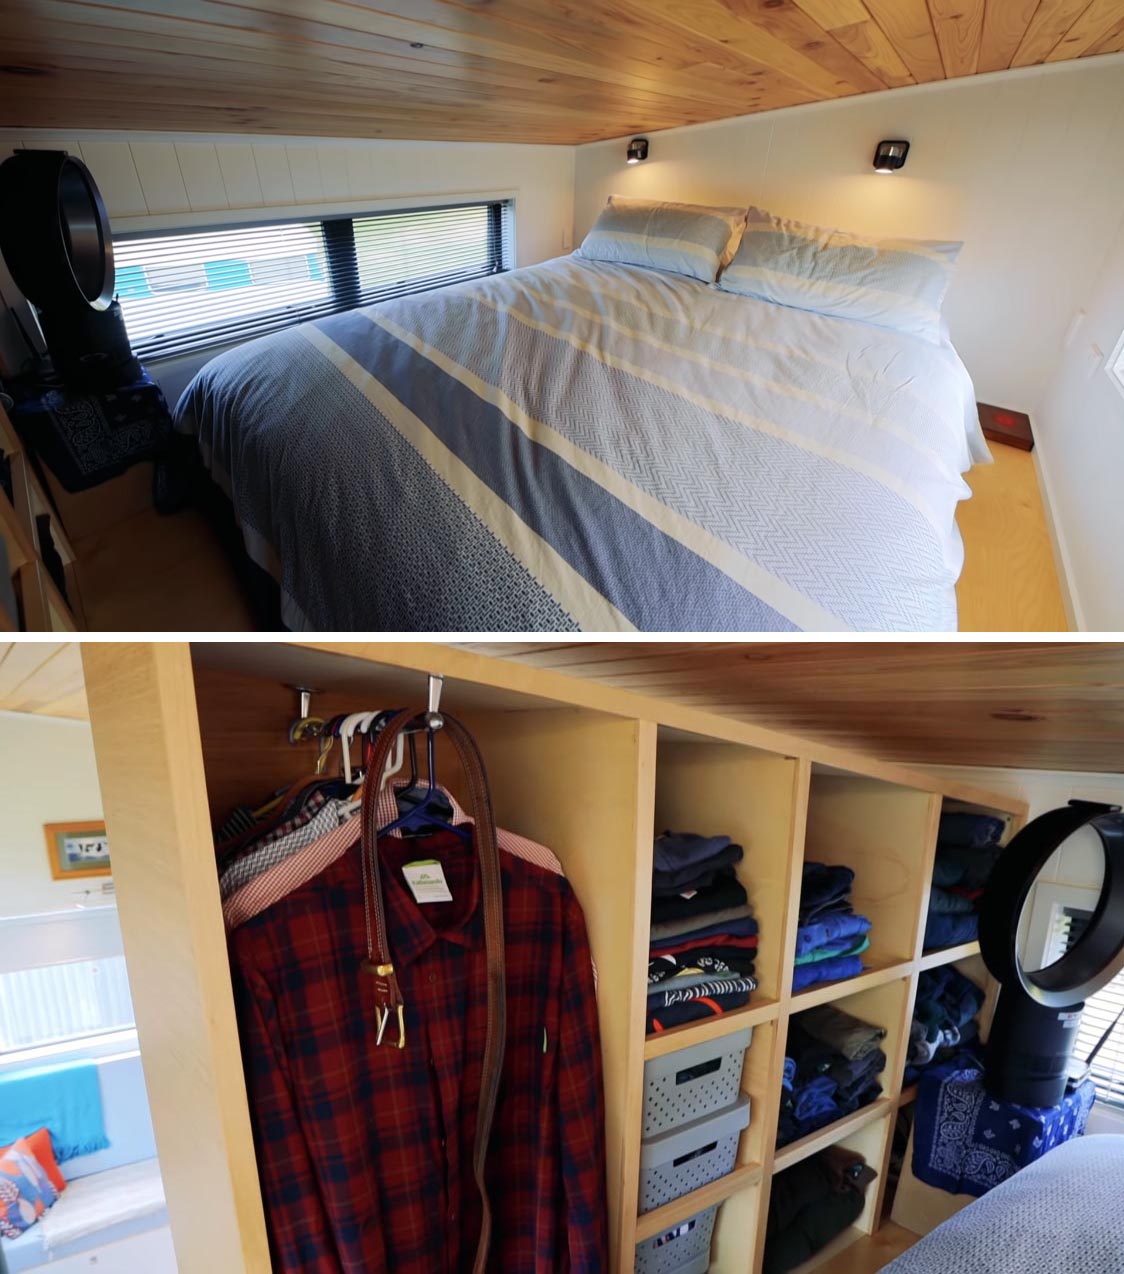 Phòng ngủ trên gác xép của ngôi nhà nhỏ hiện đại này bao gồm những bức tường trắng, cửa sổ ở hai bên và tủ mở để đựng quần áo.